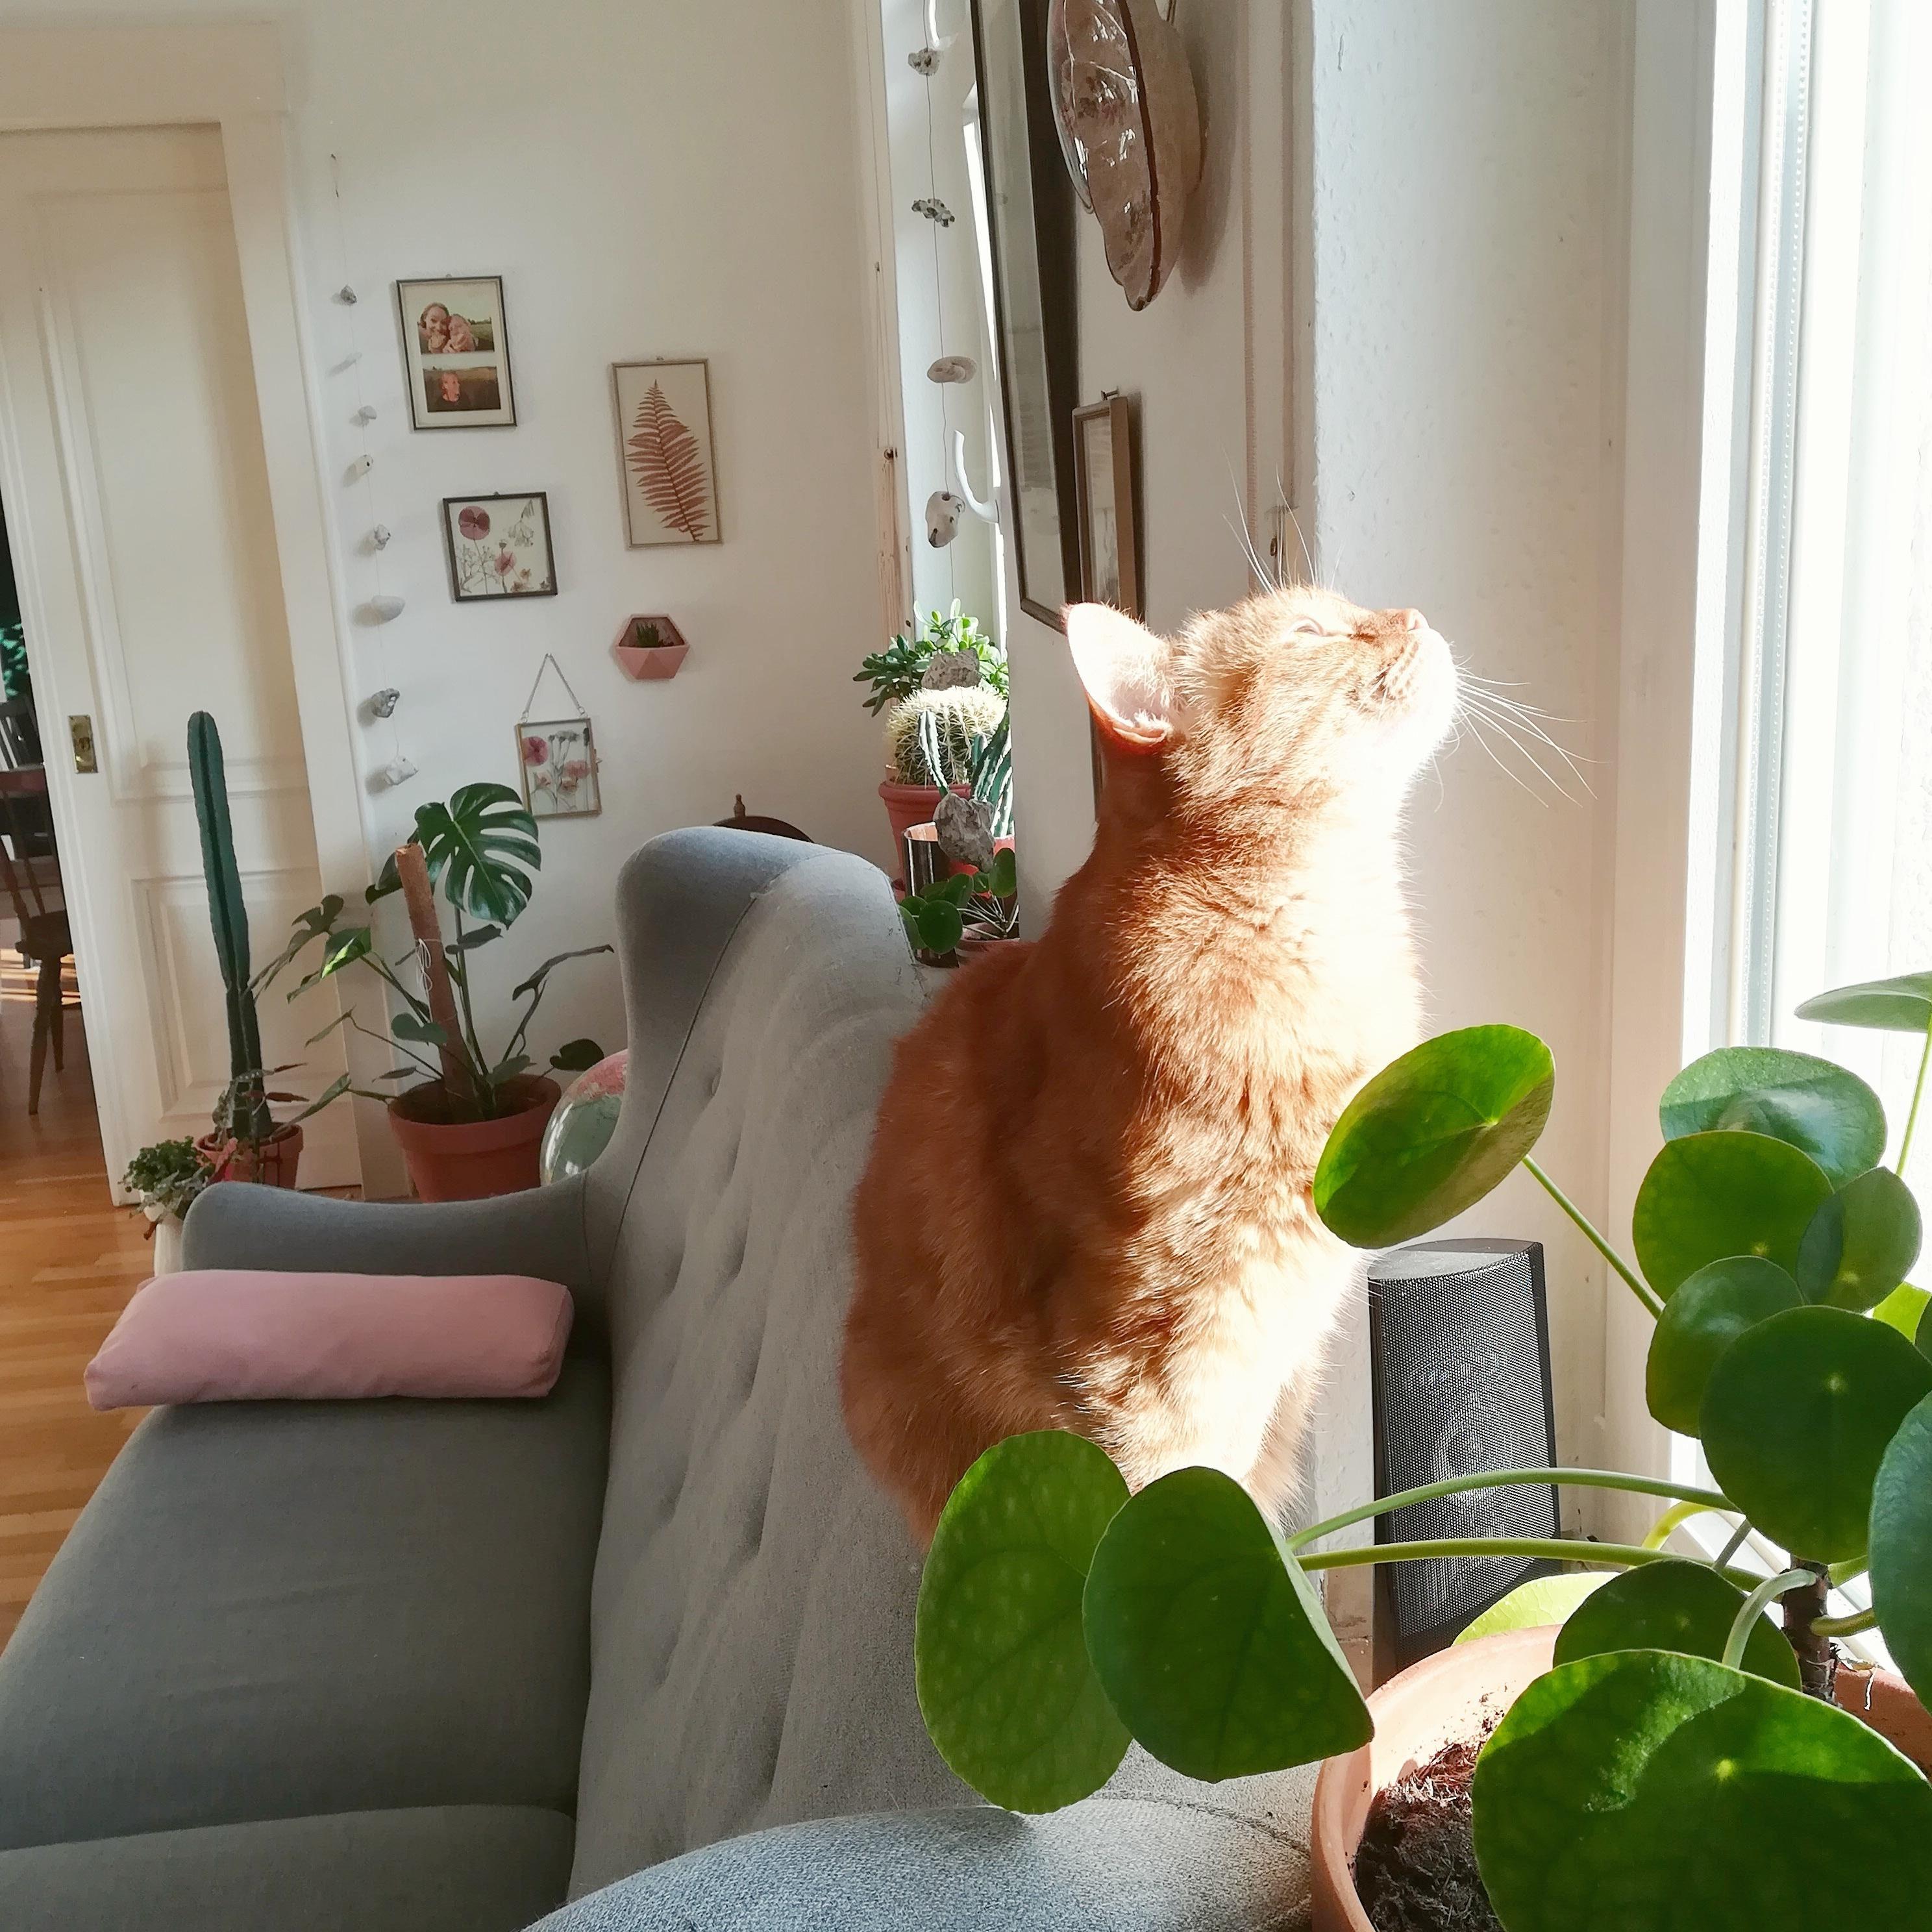 Wie gut tut #Sonnetanken nach einem langen Winter :)
#katzenlady #gingercat #wohnzimmer #meinzuhause